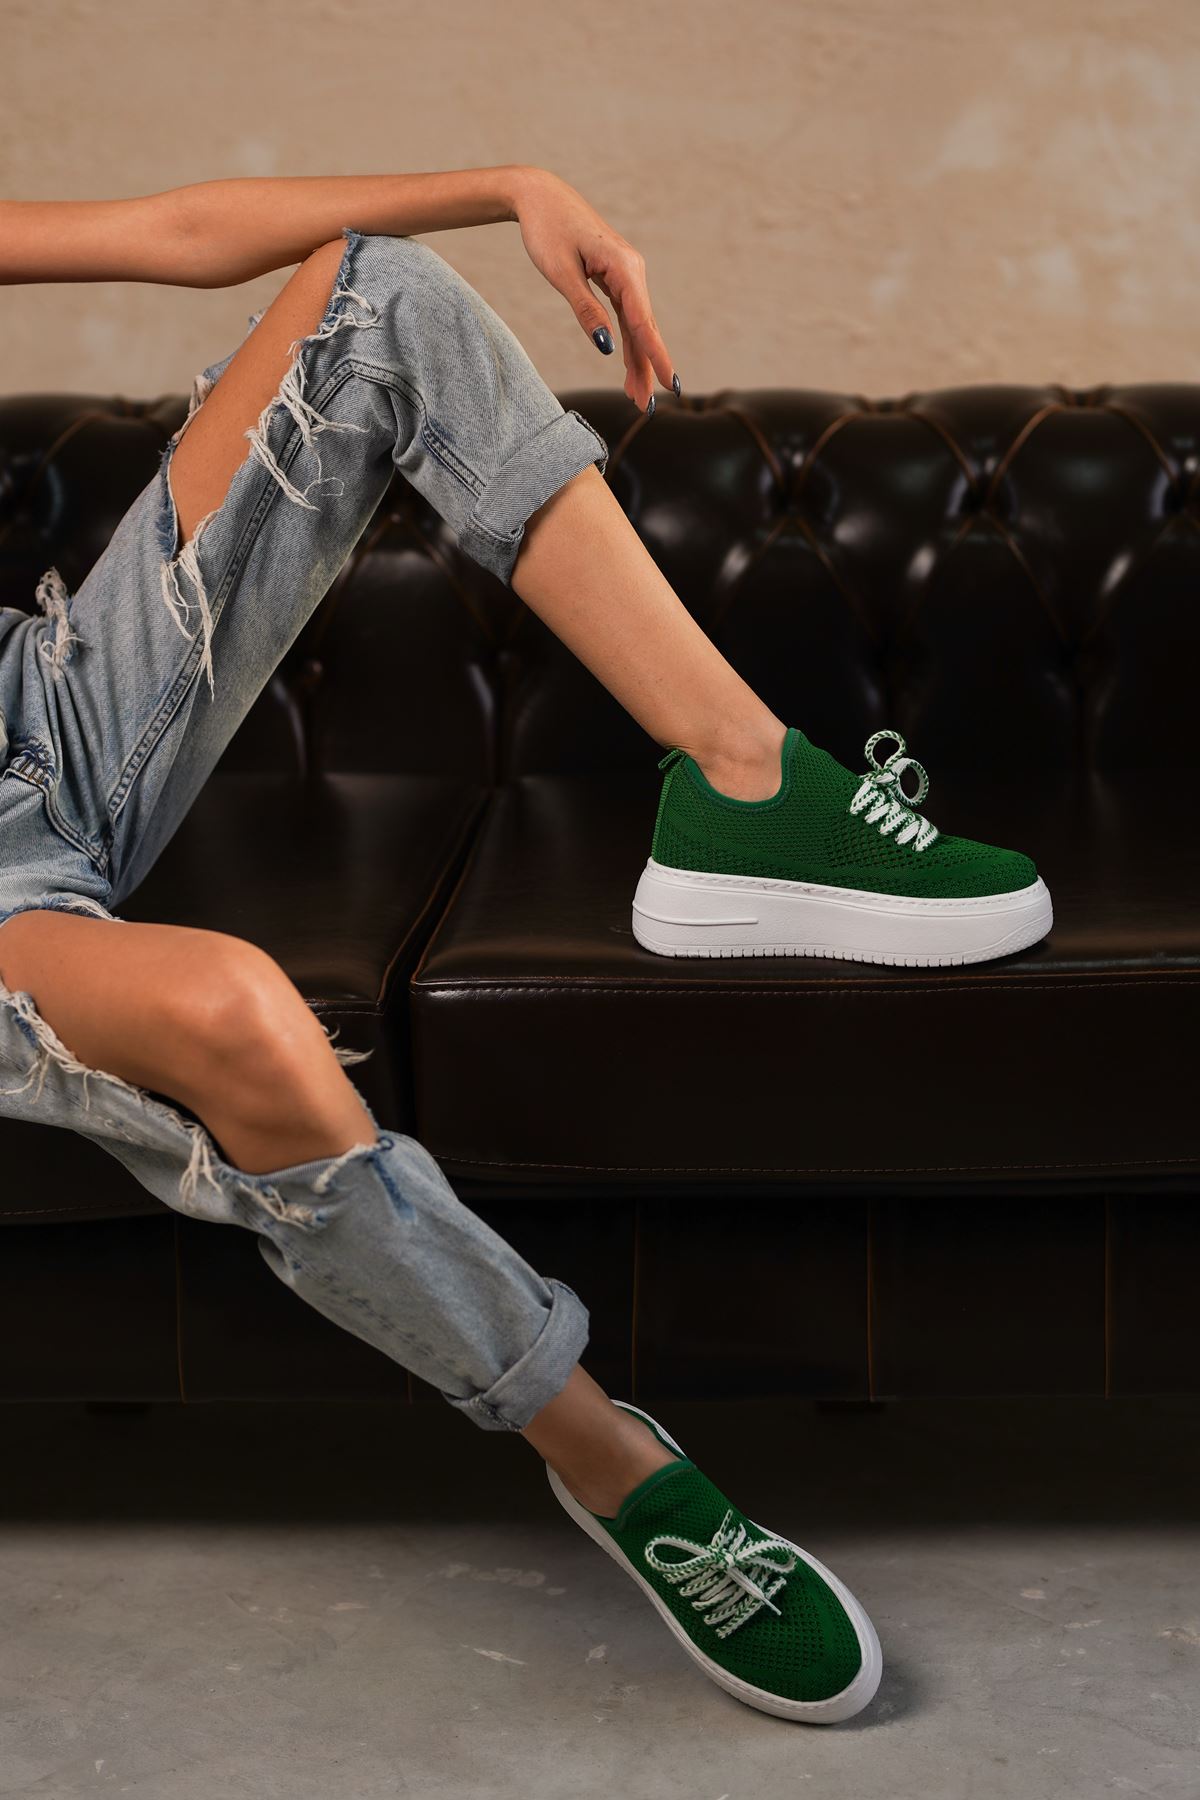 Kadın Joli Triko Bağcıklı Spor Ayakkabı - Yeşil